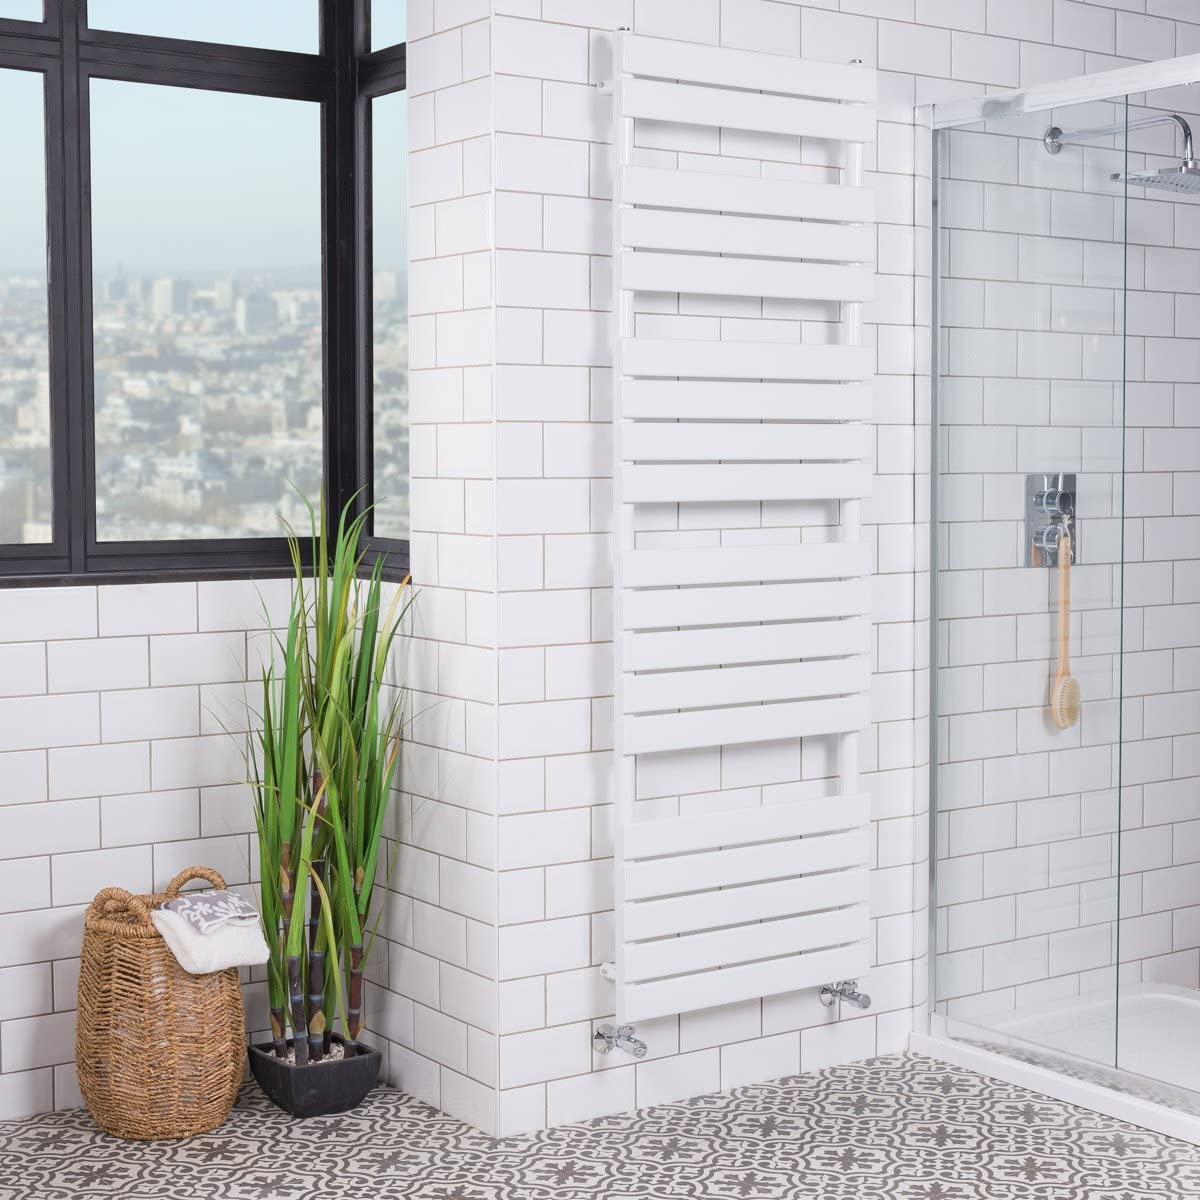 WarmeHaus Designer Minimalist Bathroom Flat Panel Heated Towel Rail Radiator